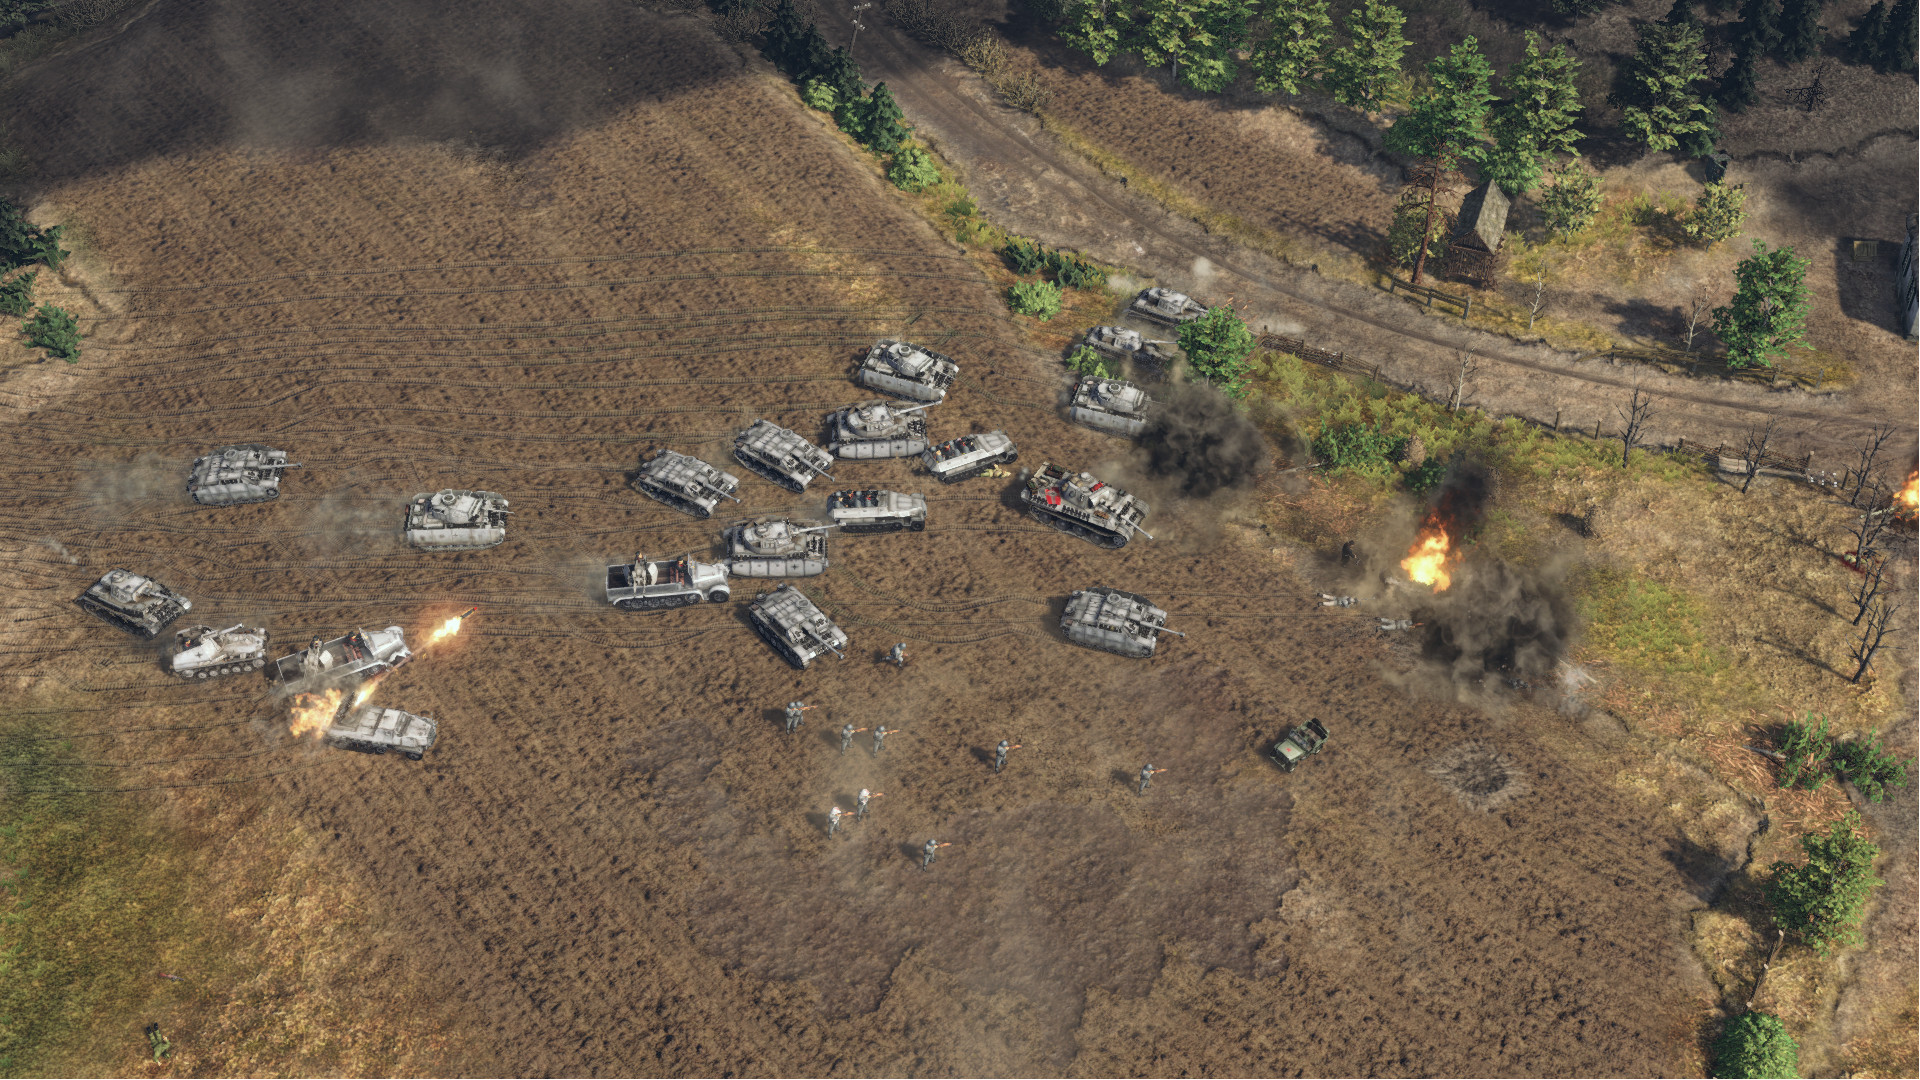 Sudden Strike 4 - Battle of Kursk DLC Steam CD Key 1.68 $